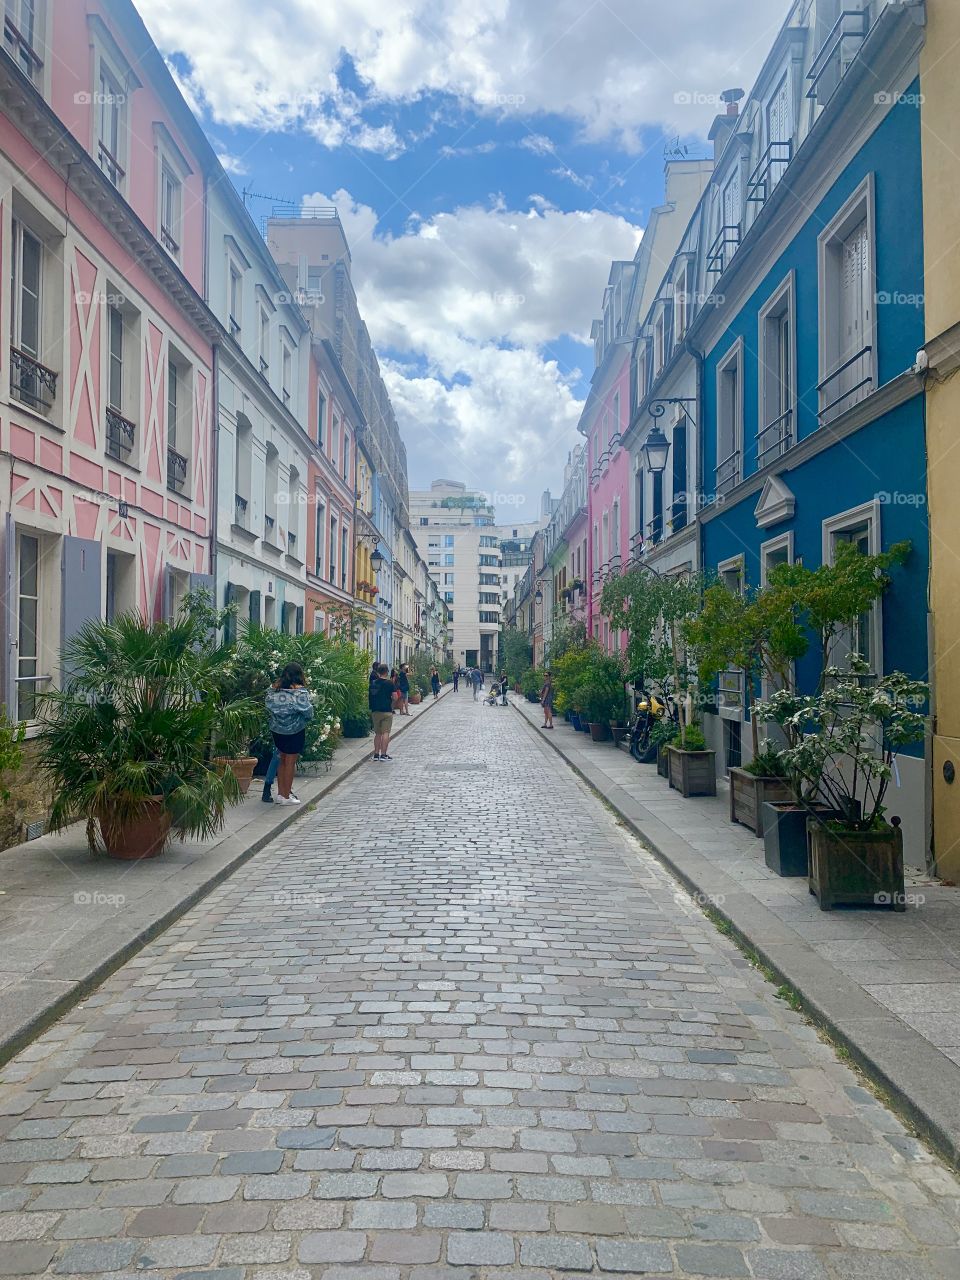 Le Rue de Crémieux or the colorful street in paris 